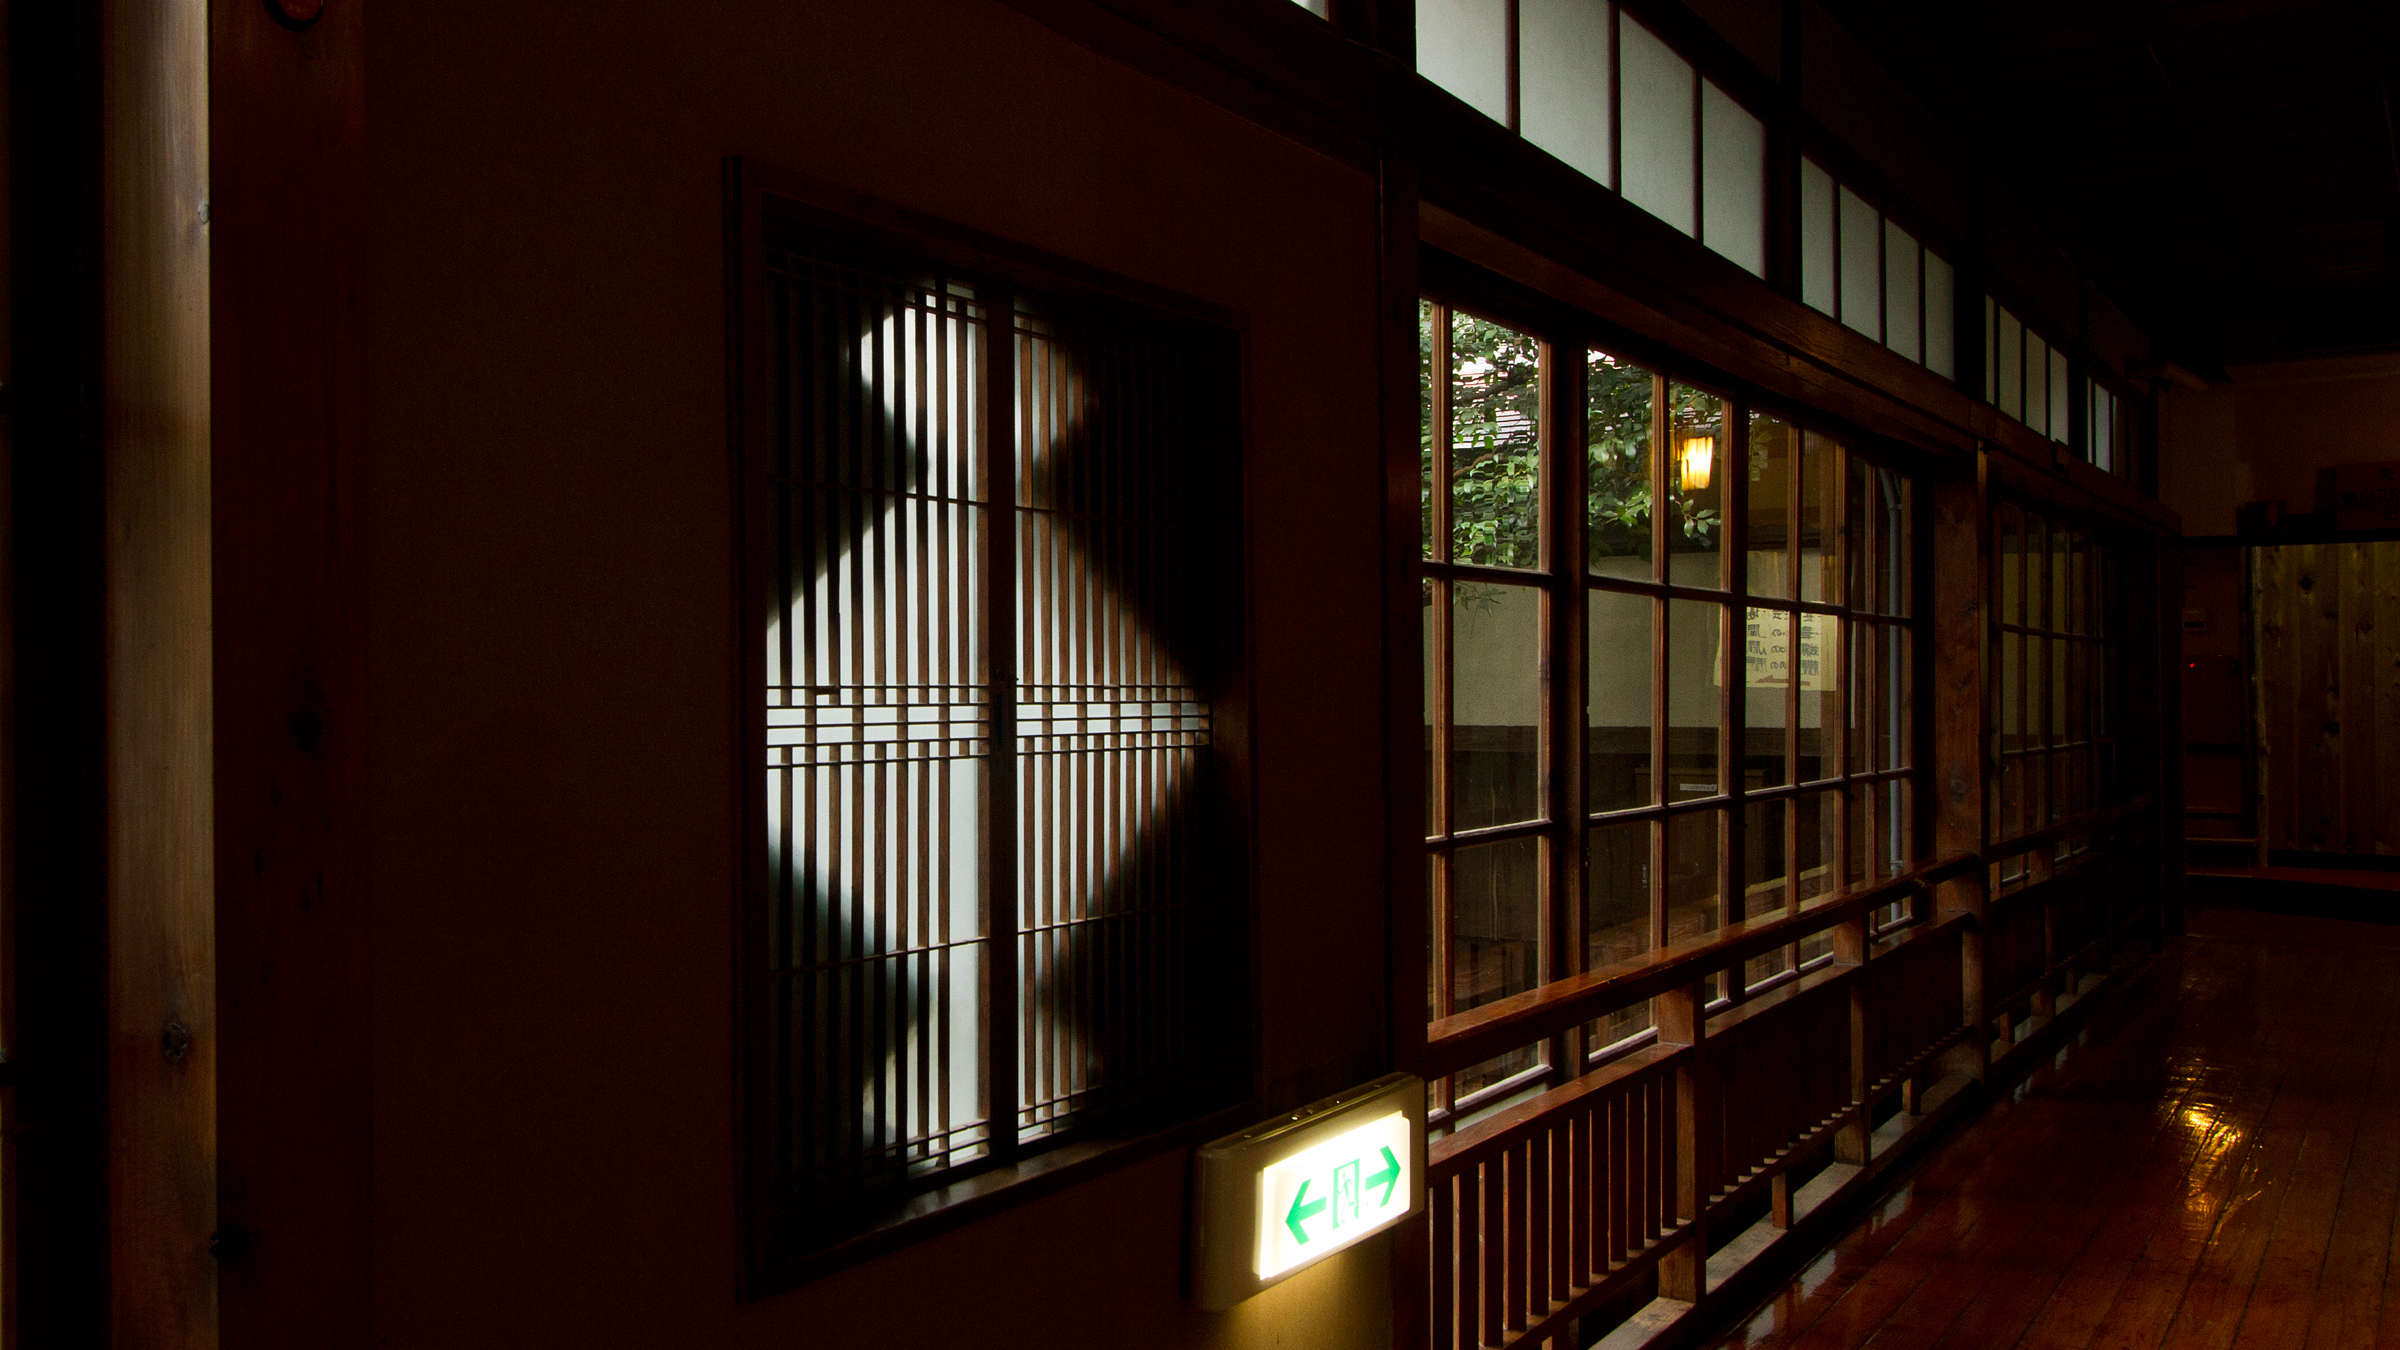 【施設】松皮菱と呼ばれる文様の窓